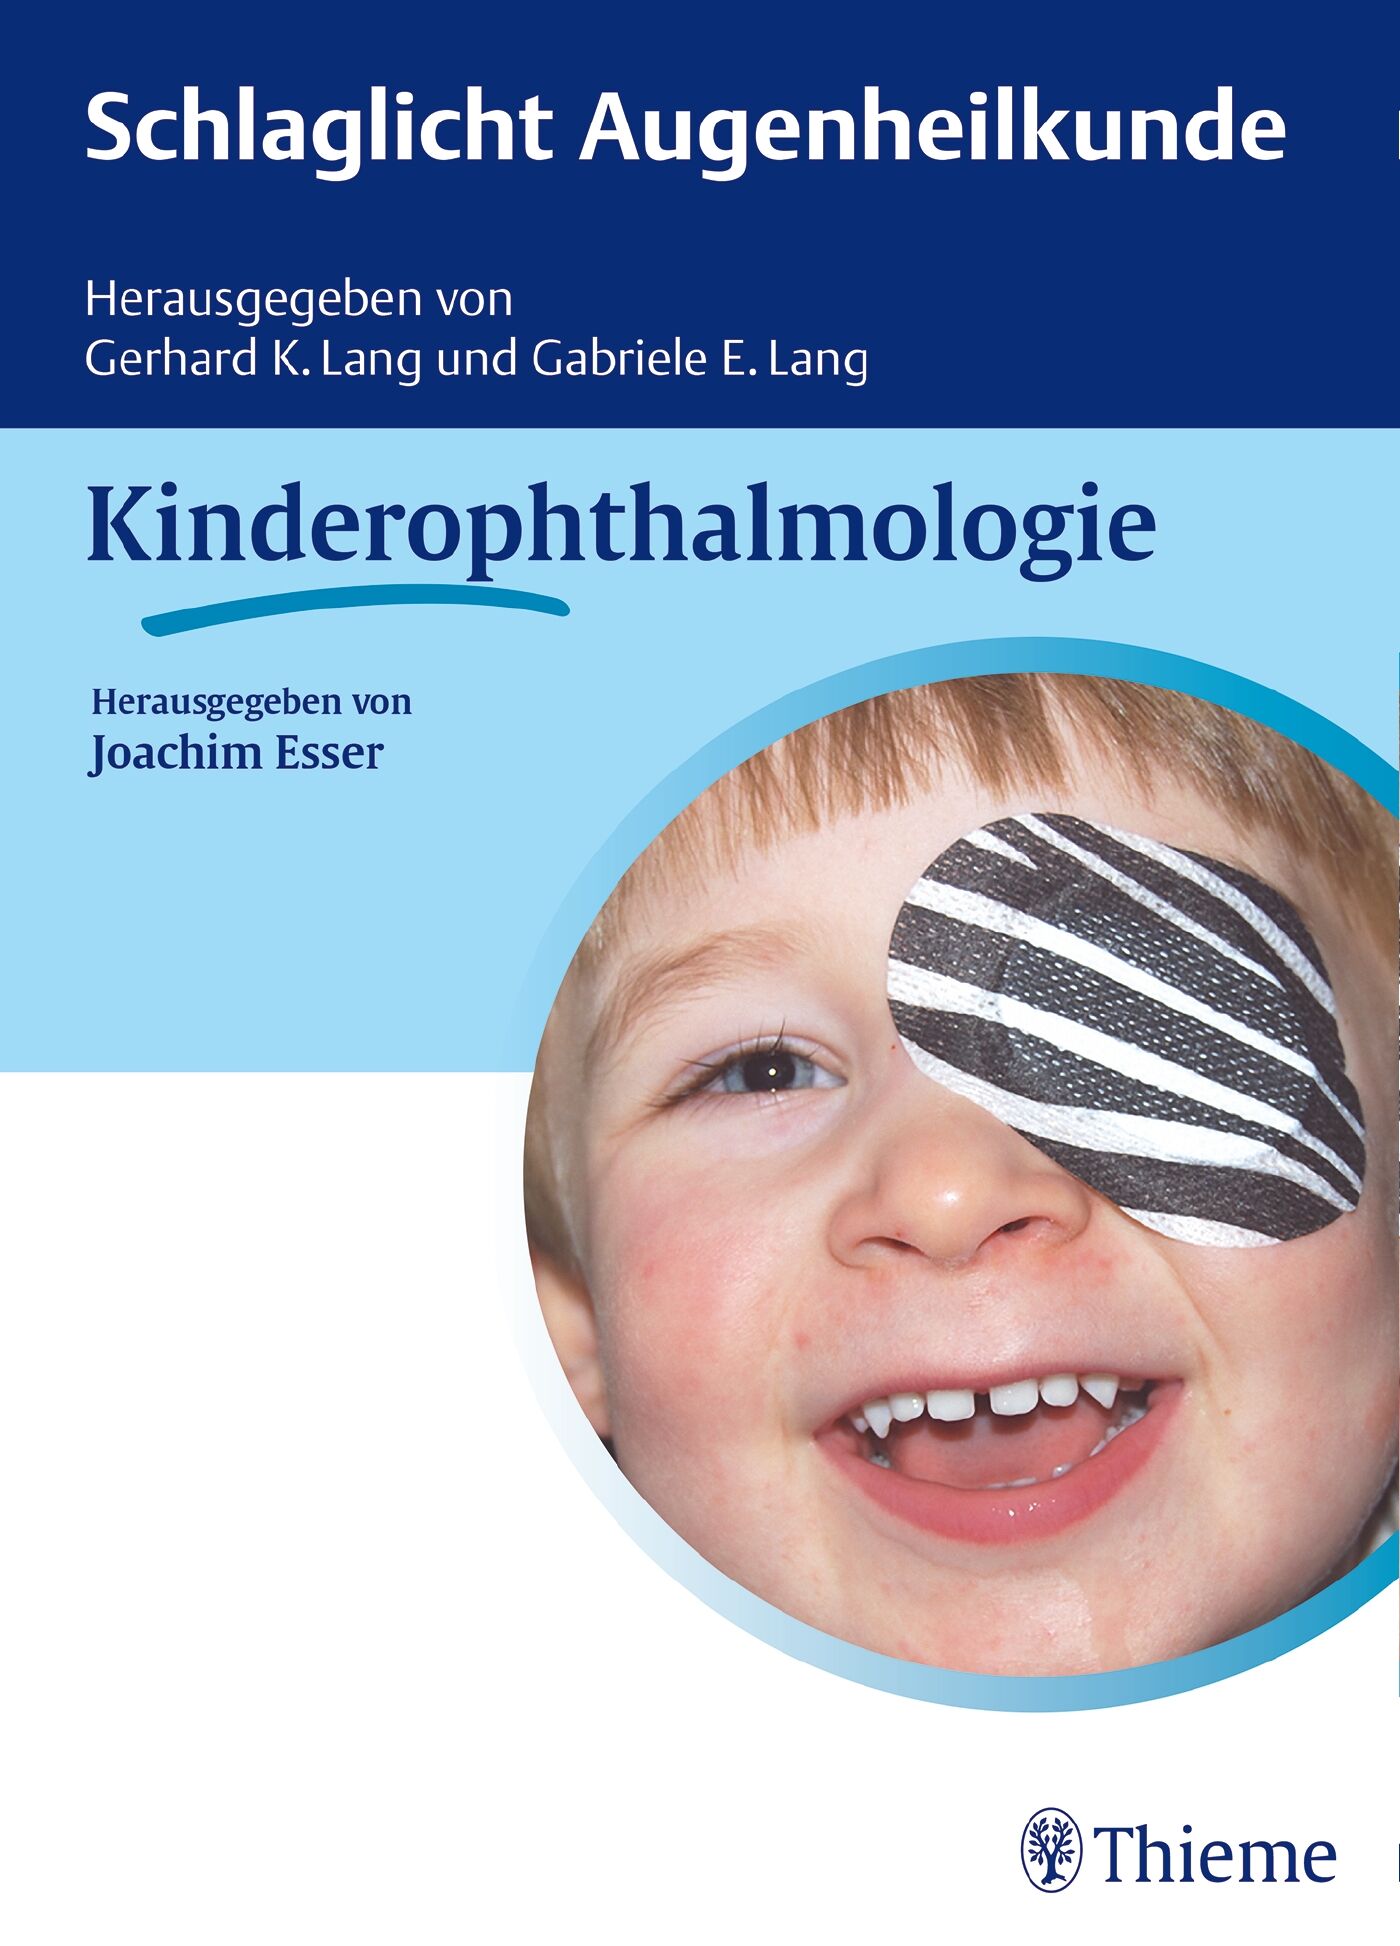 Schlaglicht Augenheilkunde: Kinderophthalmologie, 9783132030619